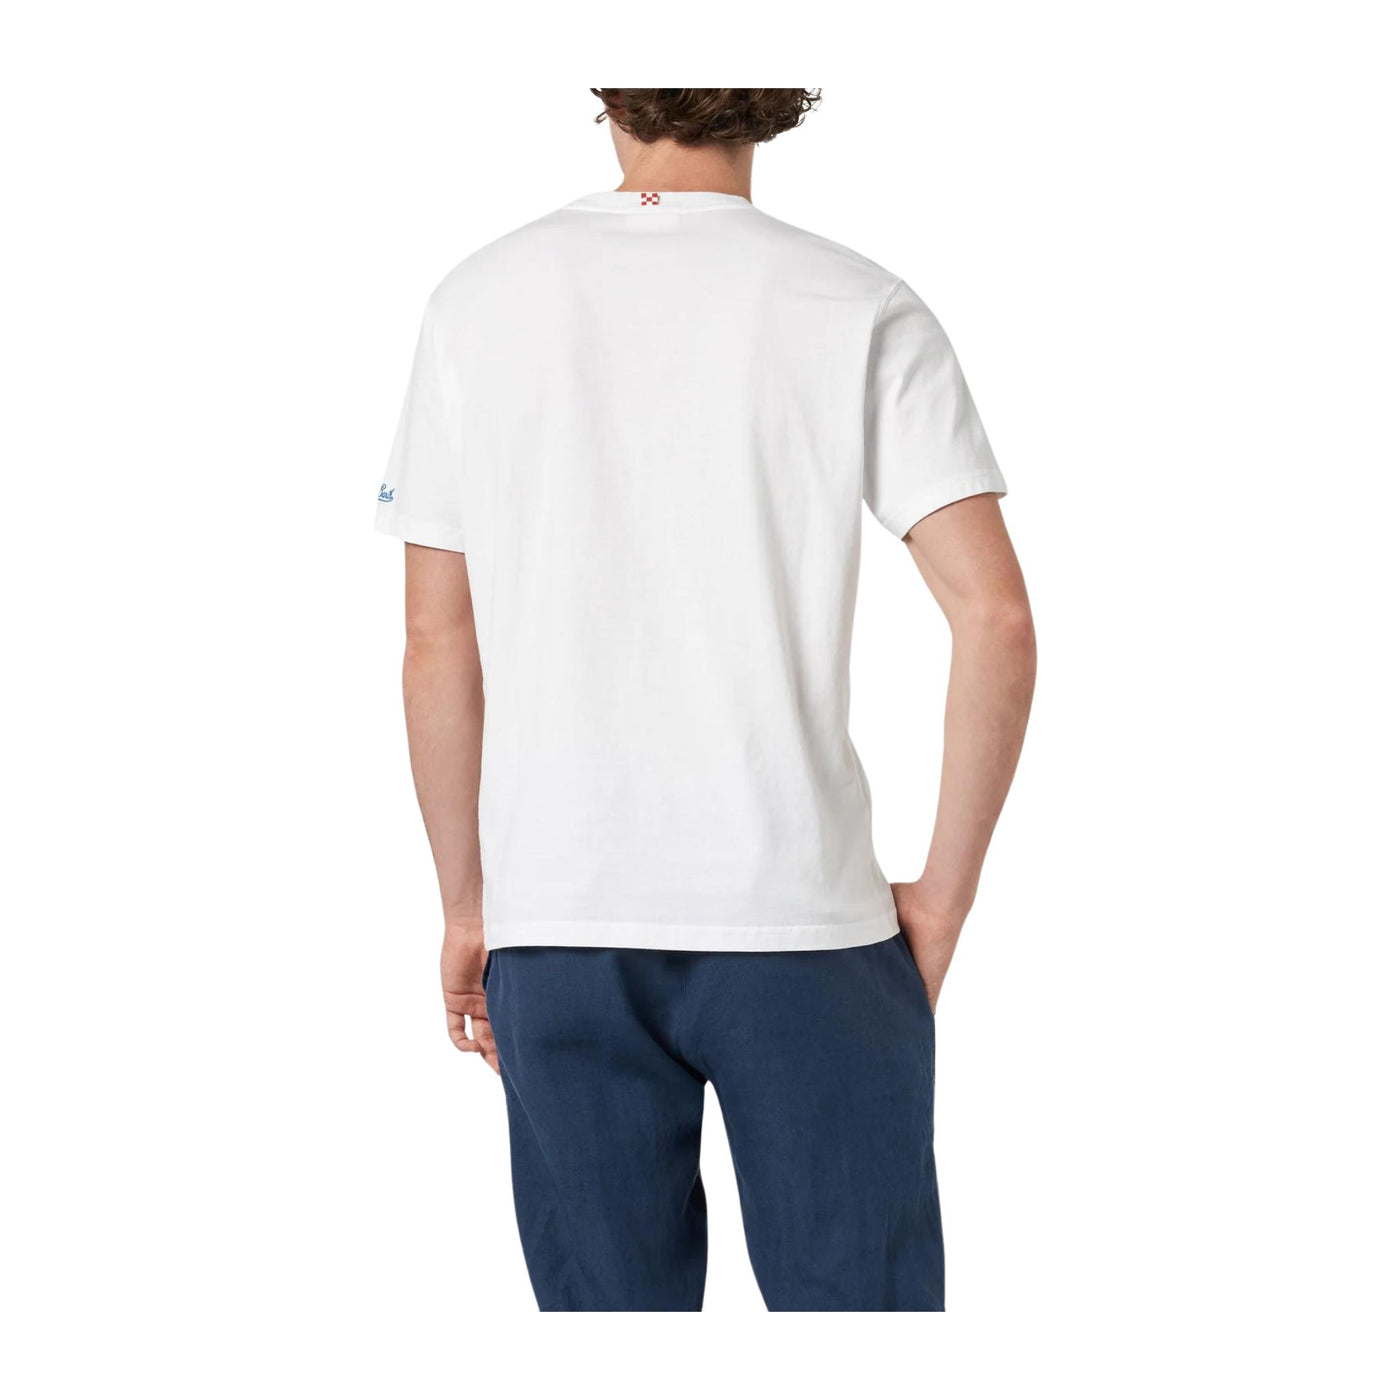 T-shirt Uomo Bianca con mini stampa sul petto e maniche corte